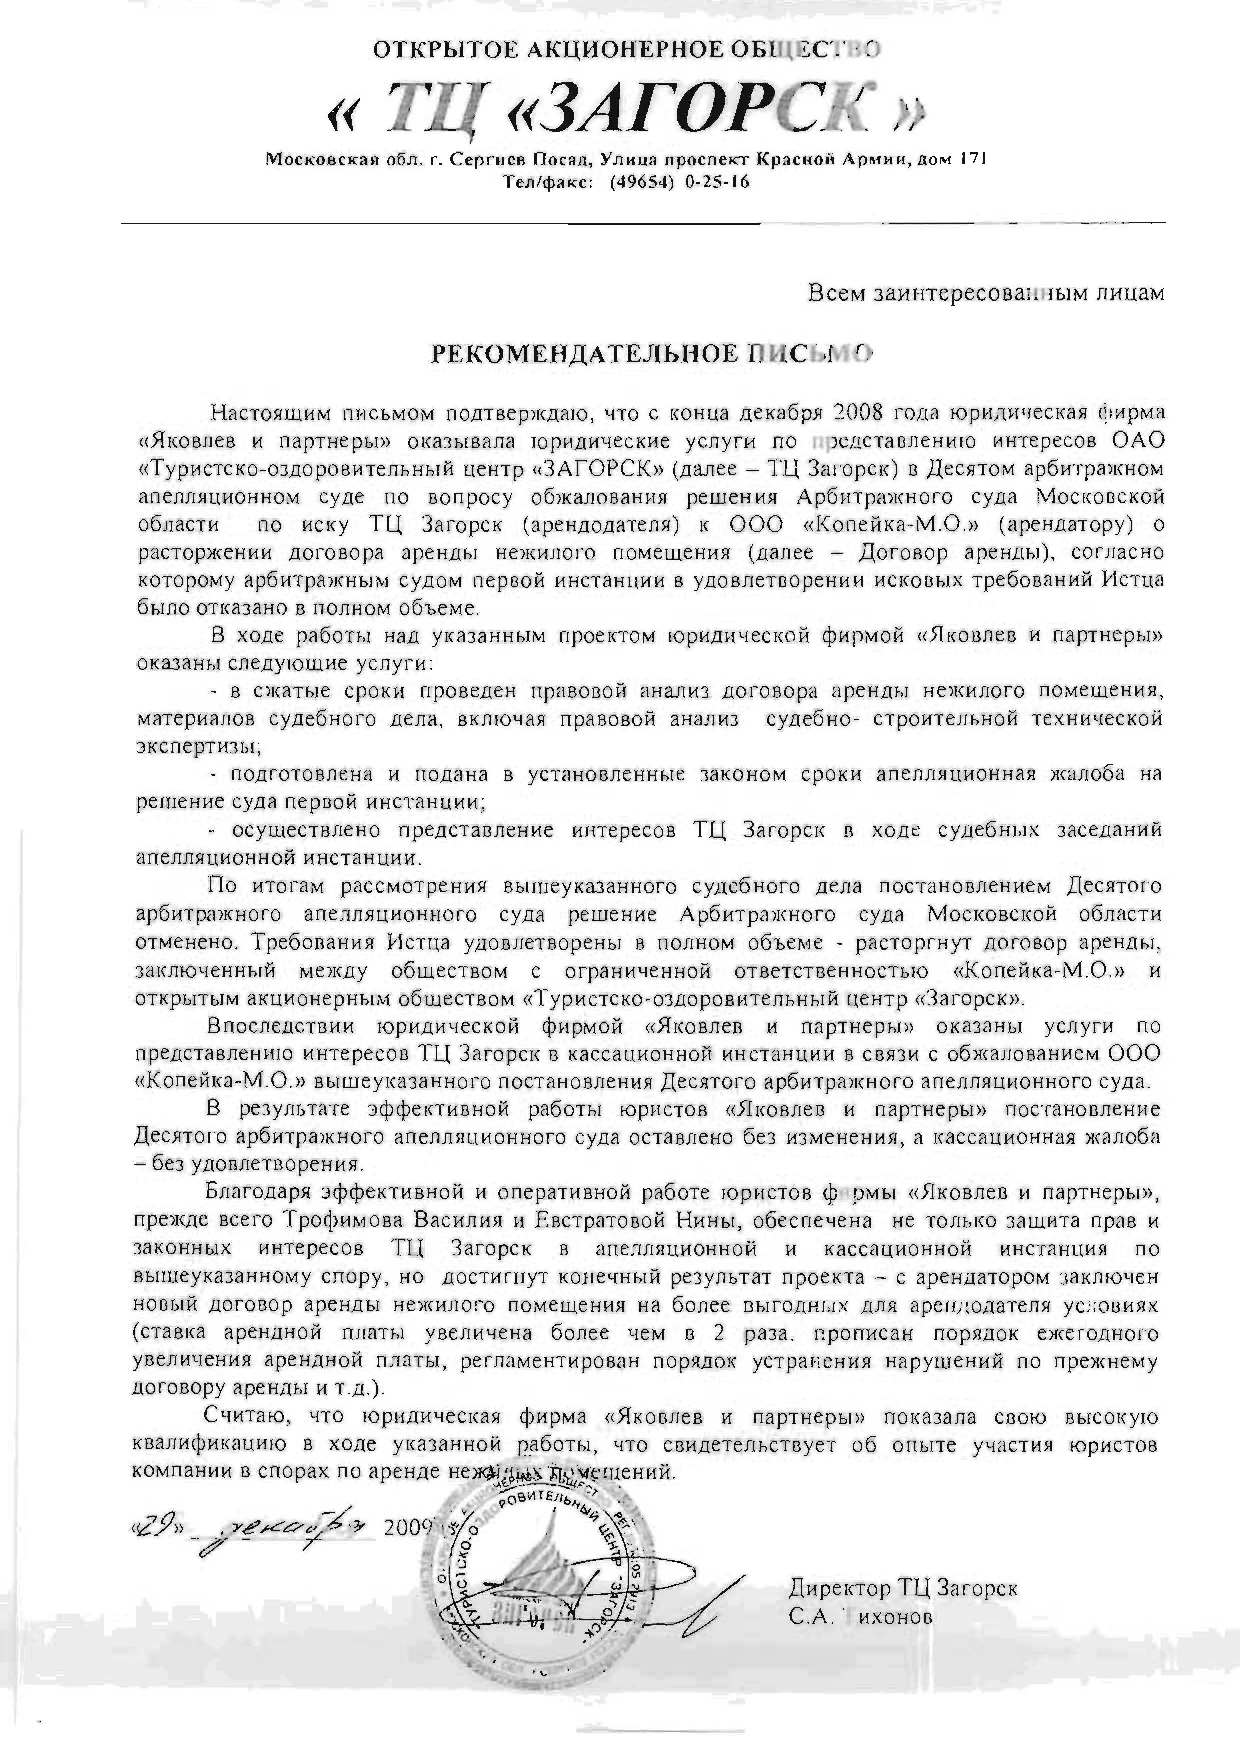 Рекомендательное письмо ОАО "Туристско-оздоровительного центра "ЗАГОРСК"